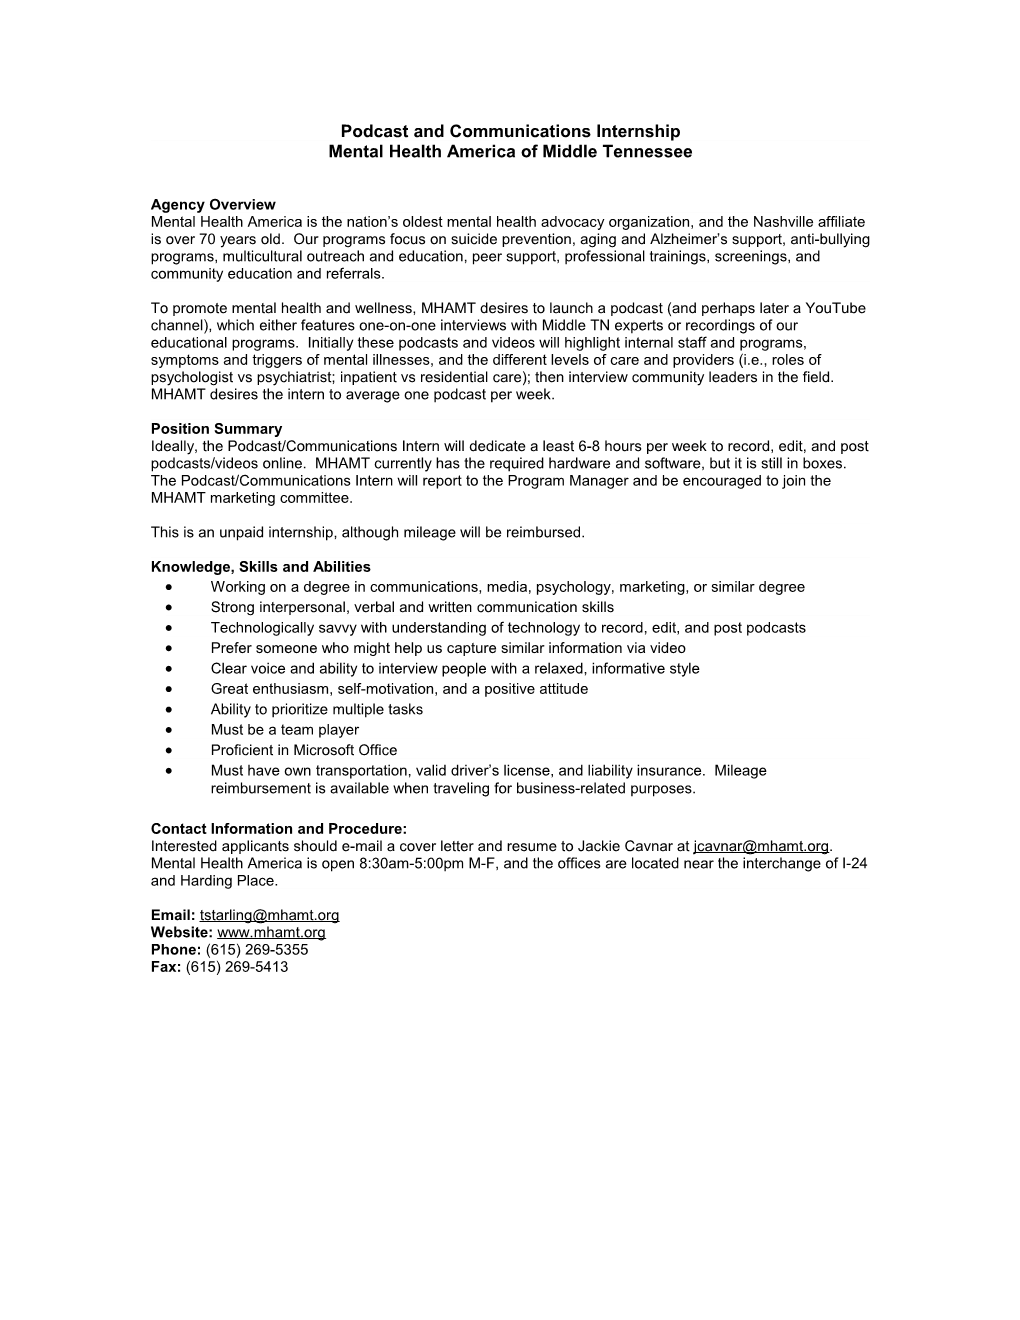 Mtsu Internship Request & Job Description